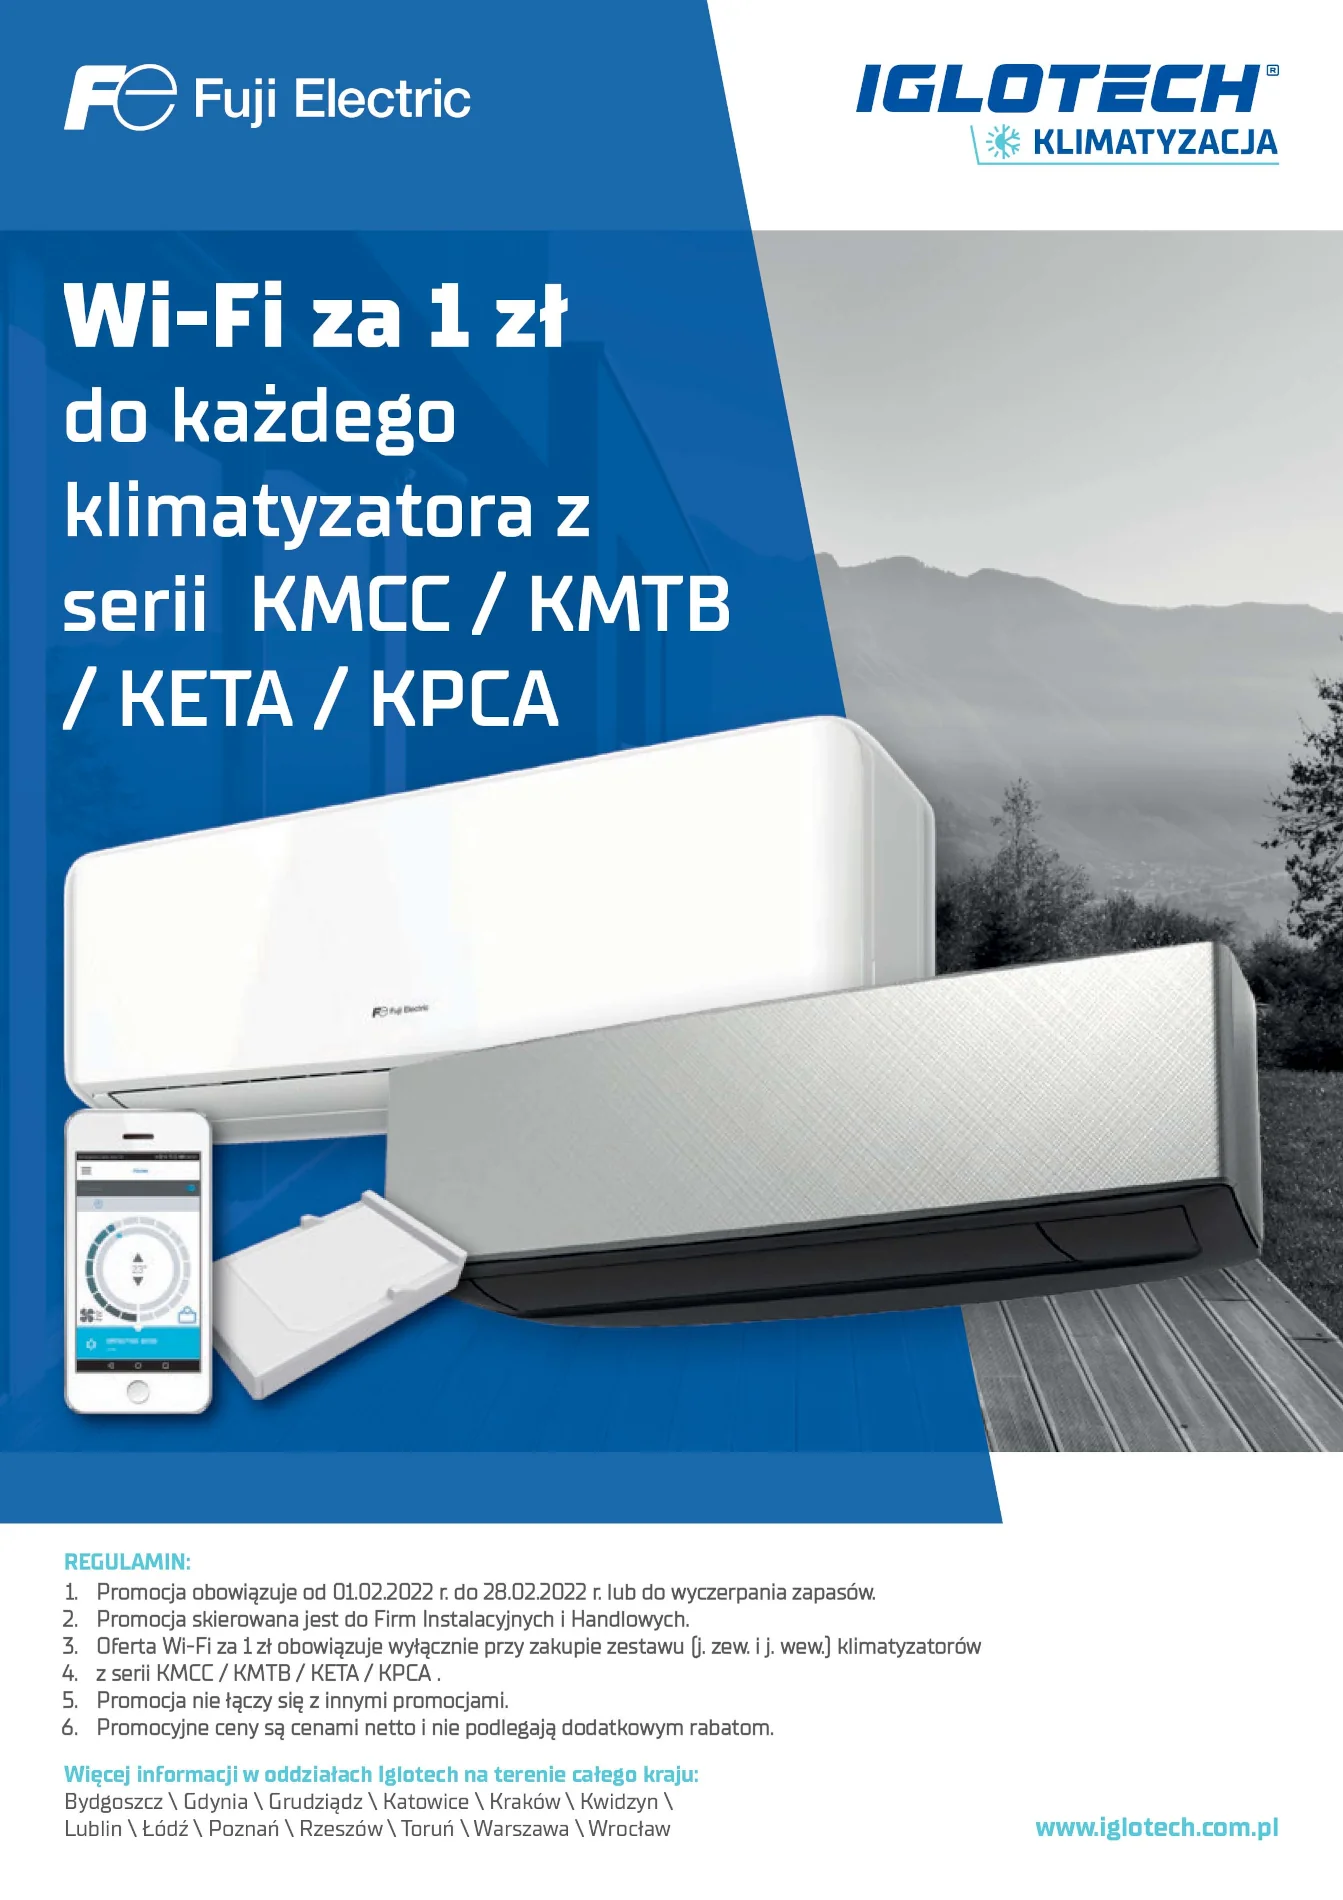 Wi-Fi za 1 zł do każdego klimatyzatora z serii KMCC/KMTB/KETA/KPCA